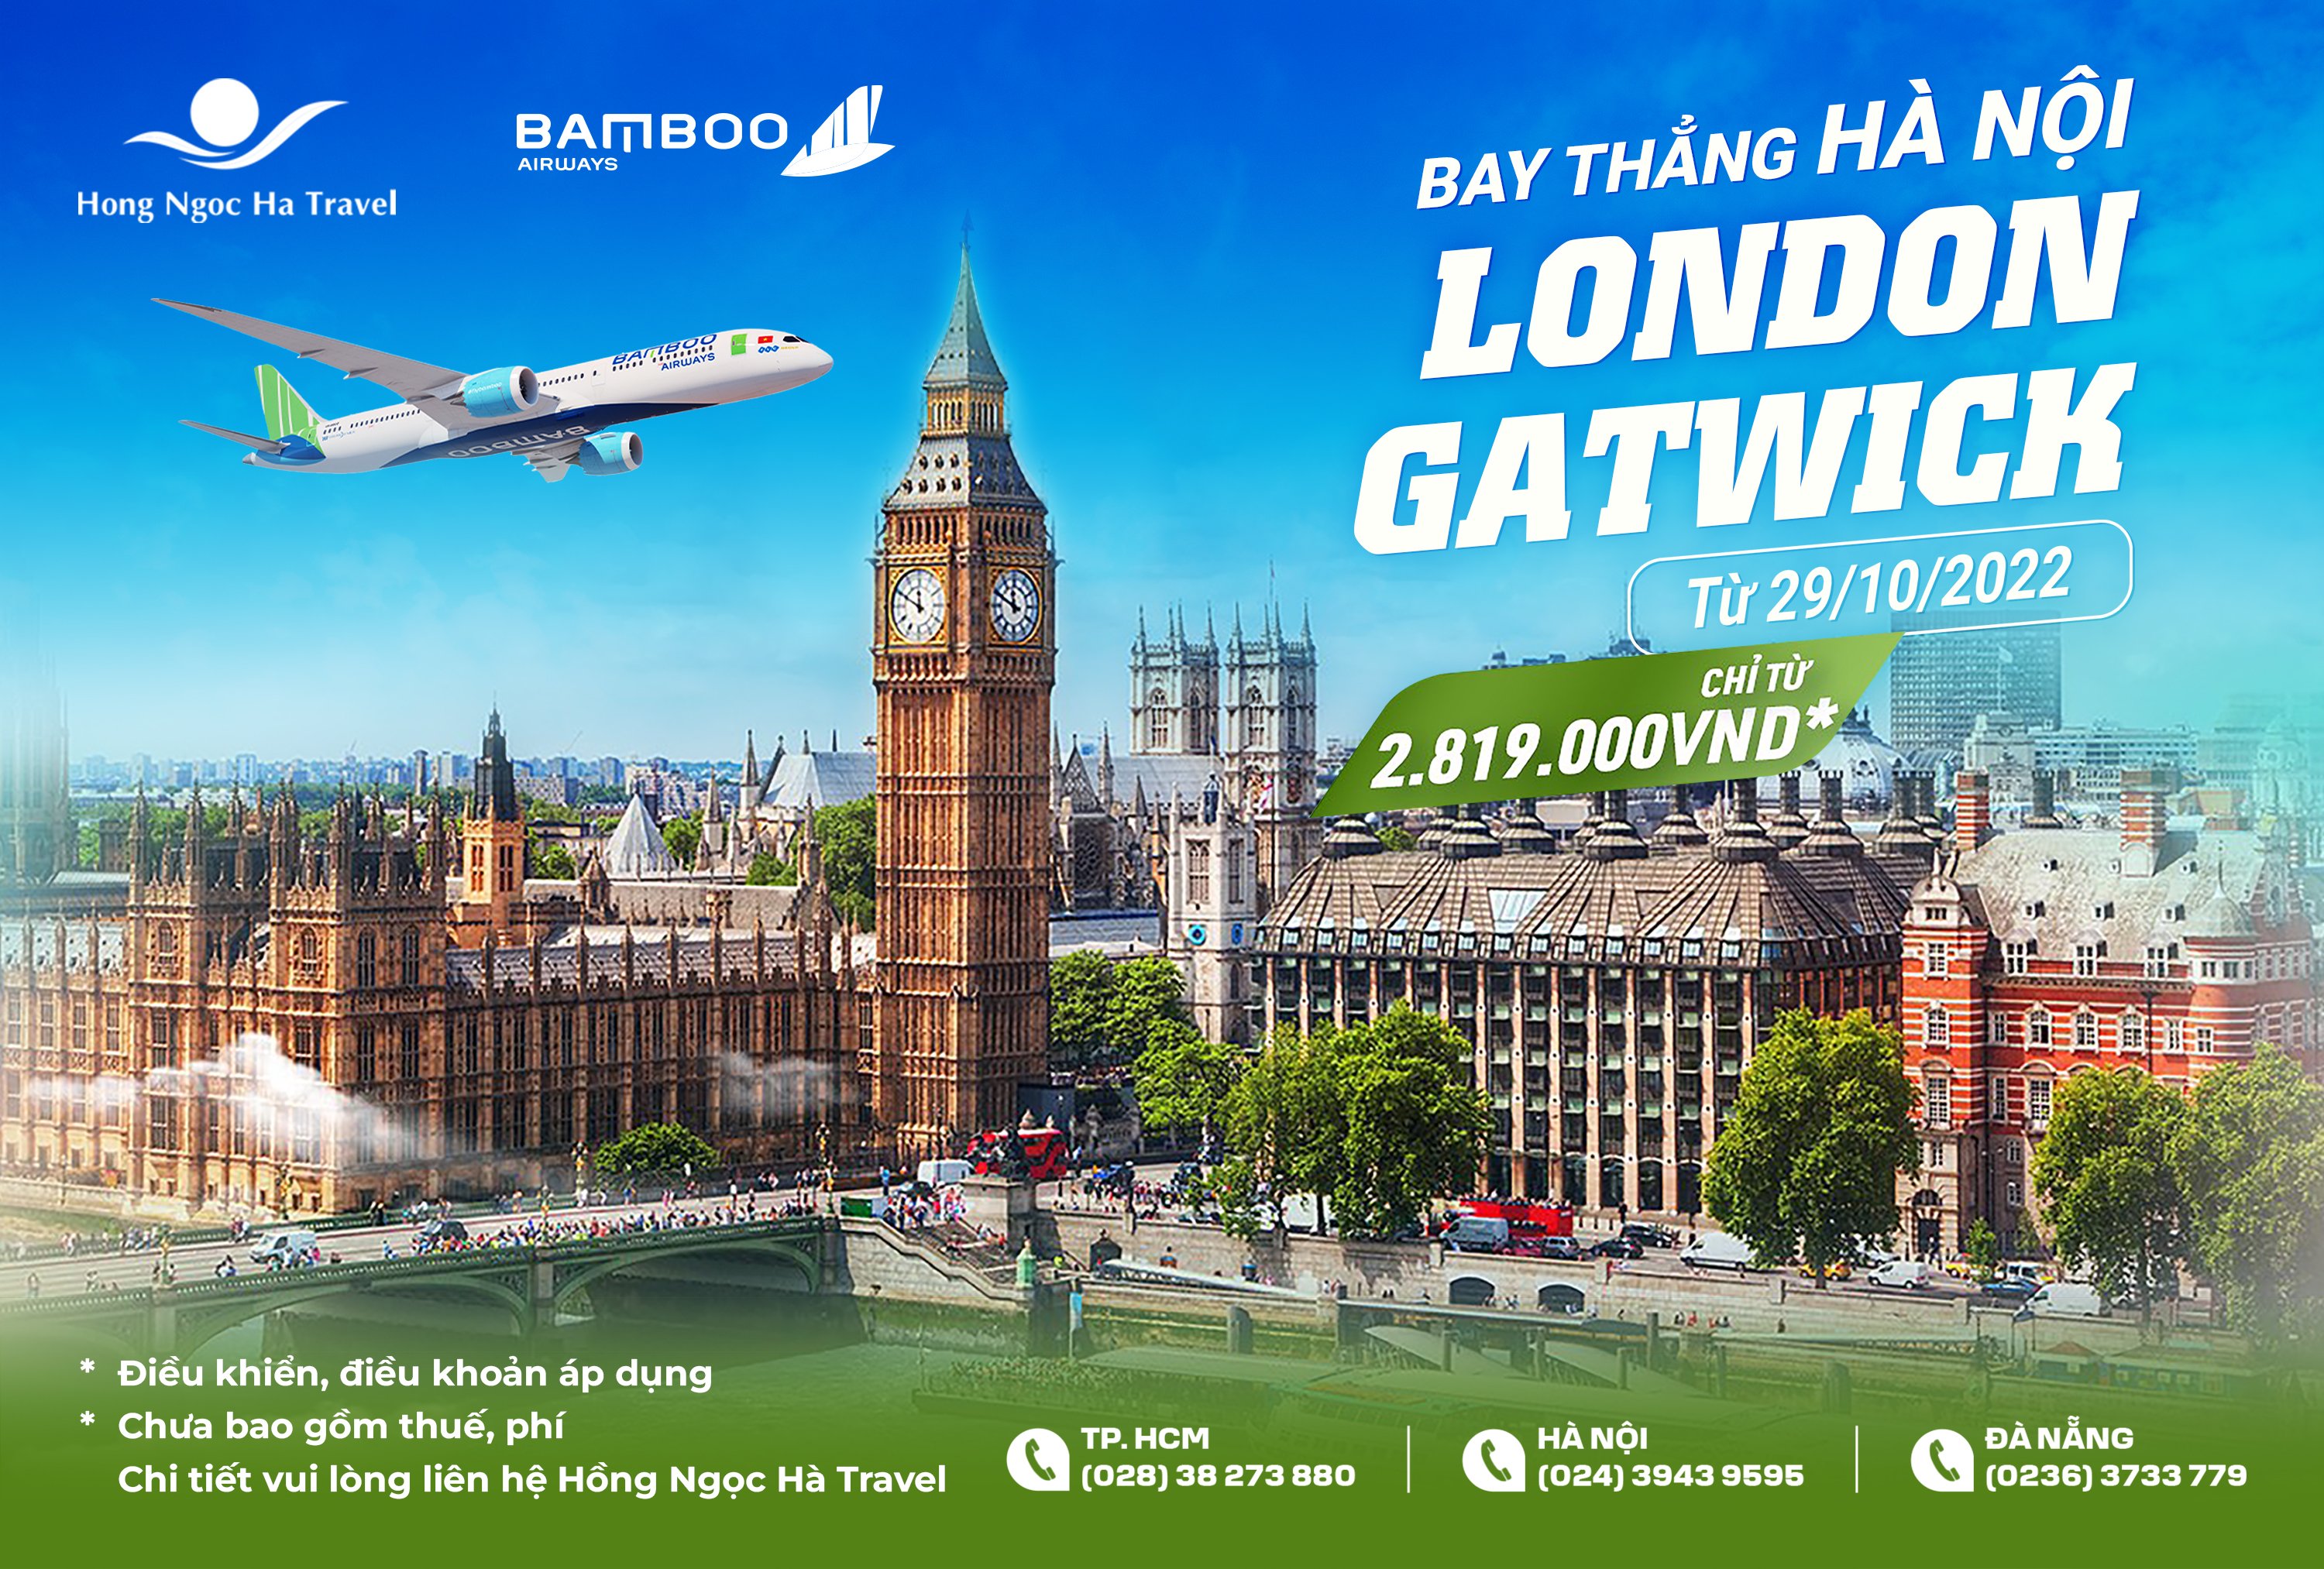 BAMBOO AIRWAYS MỞ BÁN ĐƯỜNG BAY THẲNG HÀ NỘI – LONDON GATWICK